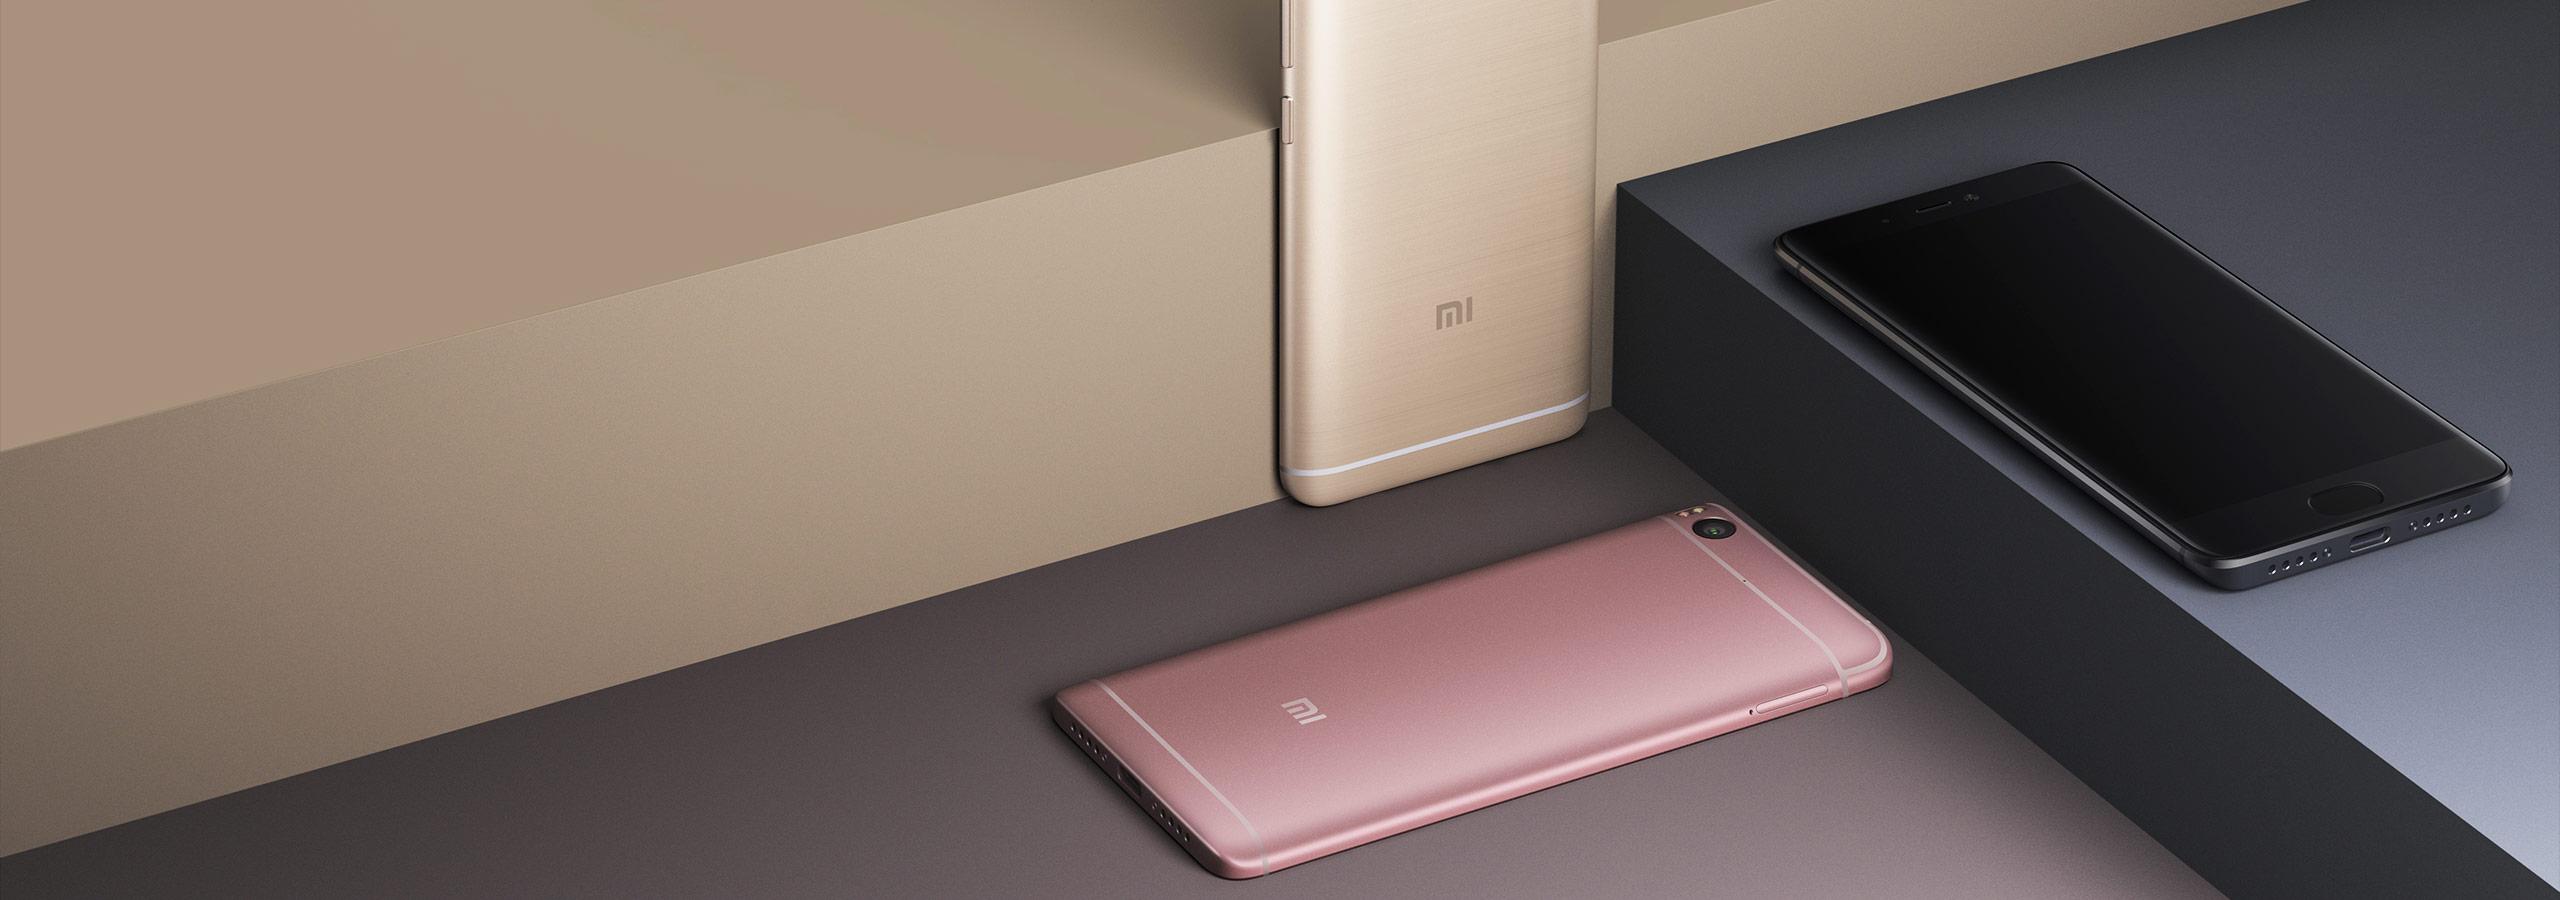 Xiaomi Mi 5s en color rosa y oro